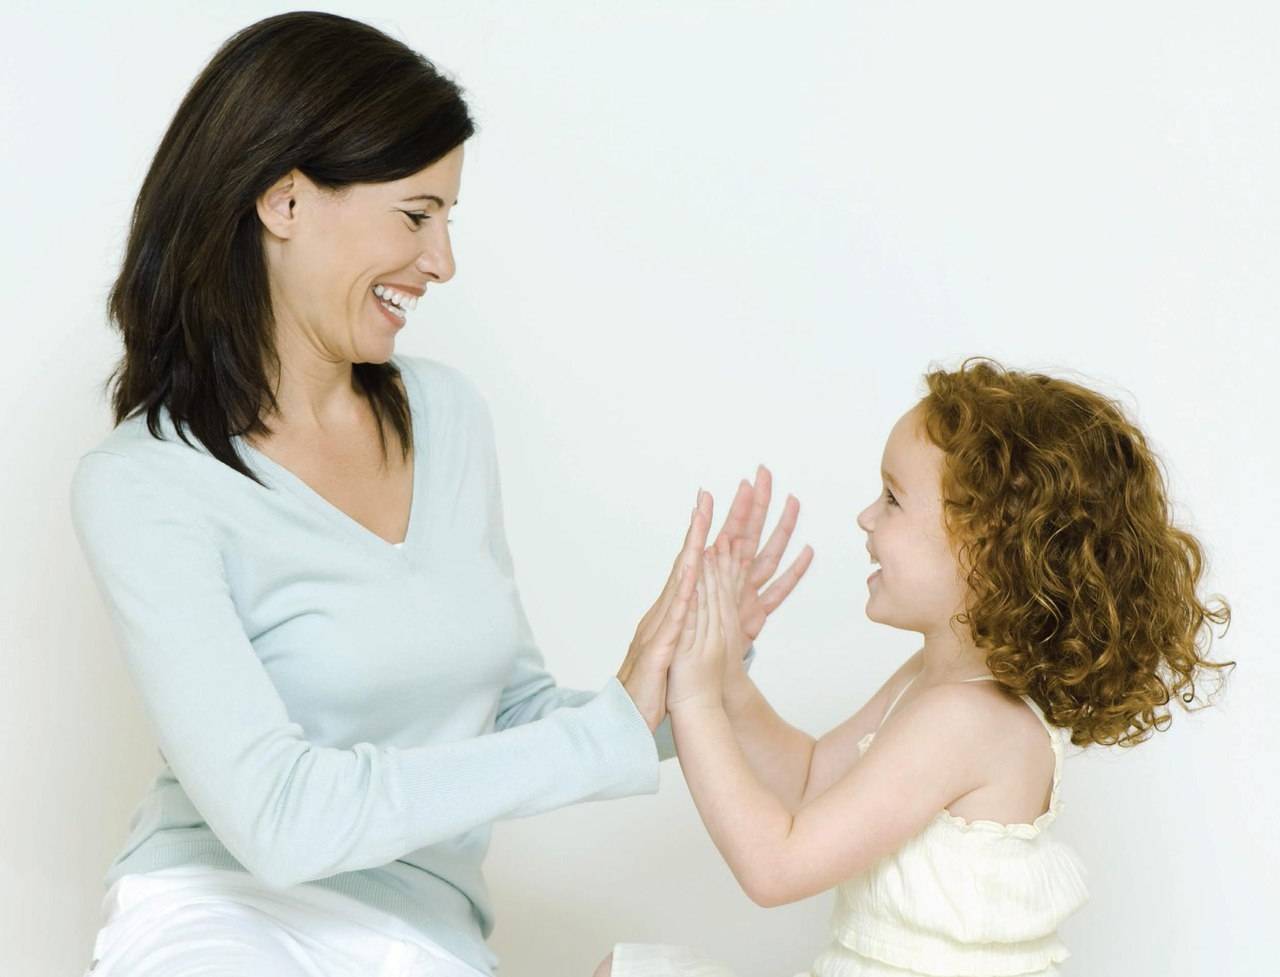 Baby clapping milestone - возраст, значение и советы для поощрения